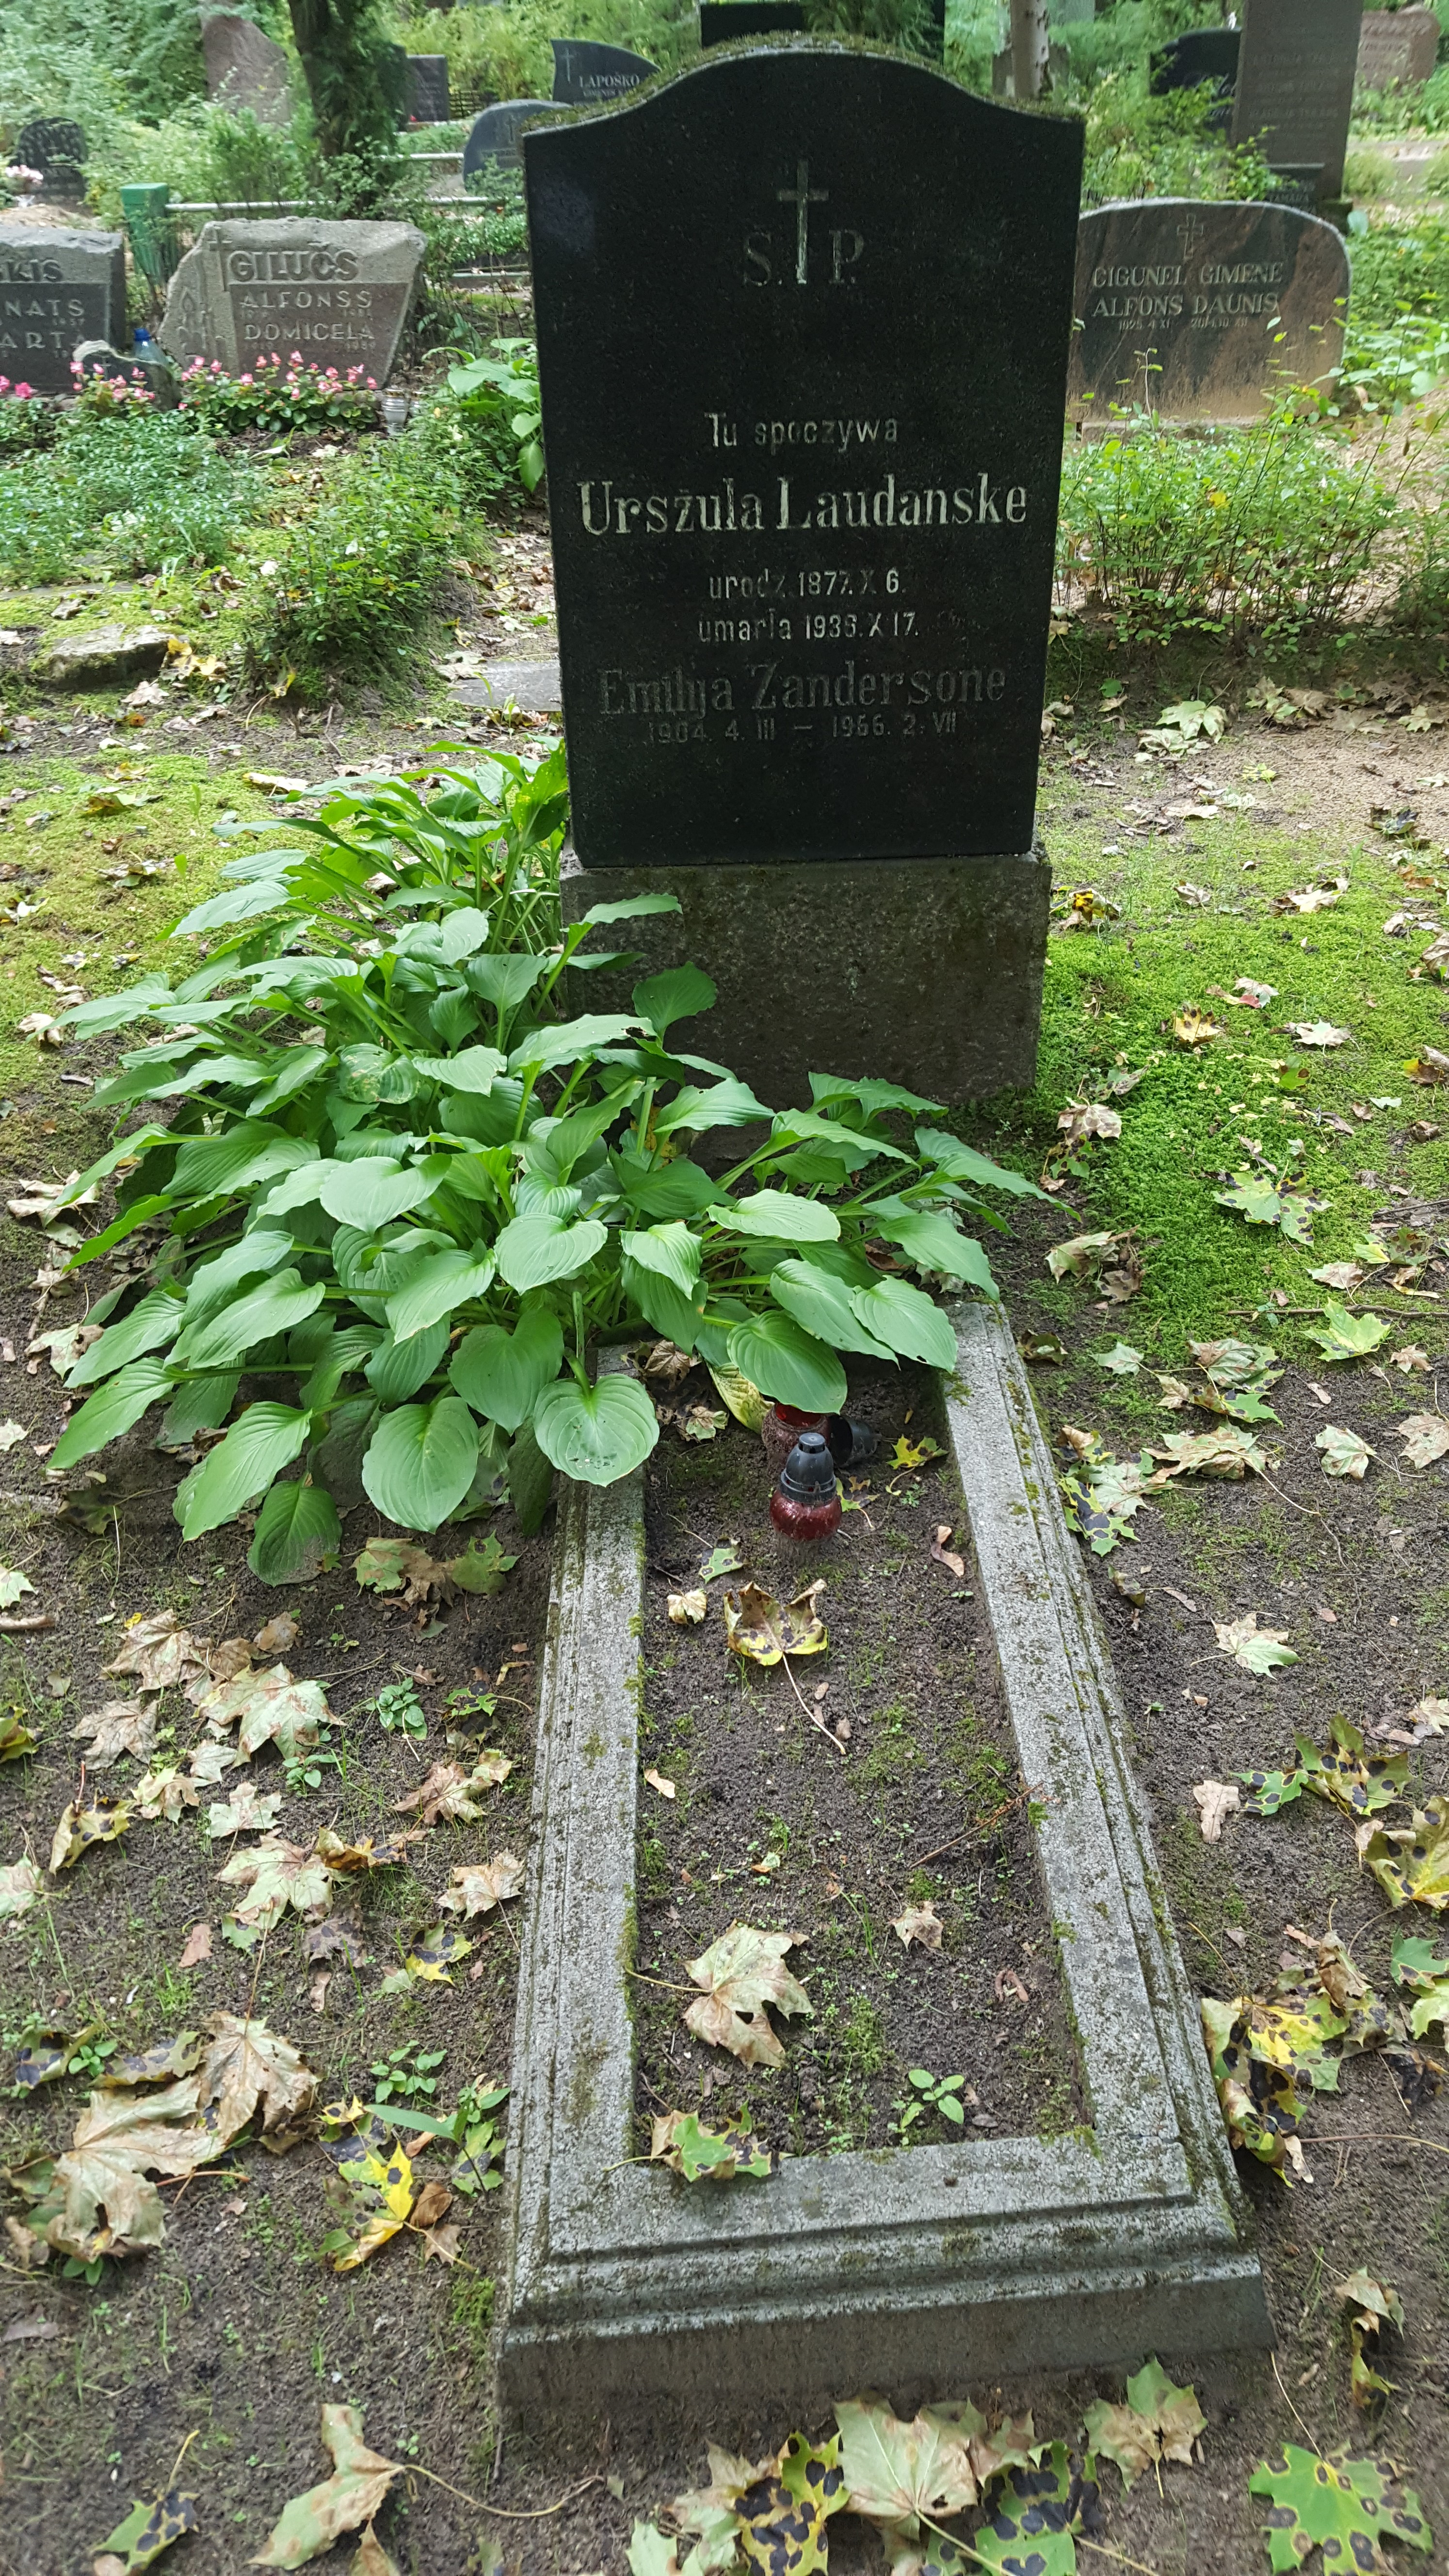 Tombstone of Ursula Laudanske and Emilija Zandersone, St Michael's cemetery in Riga, as of 2021.